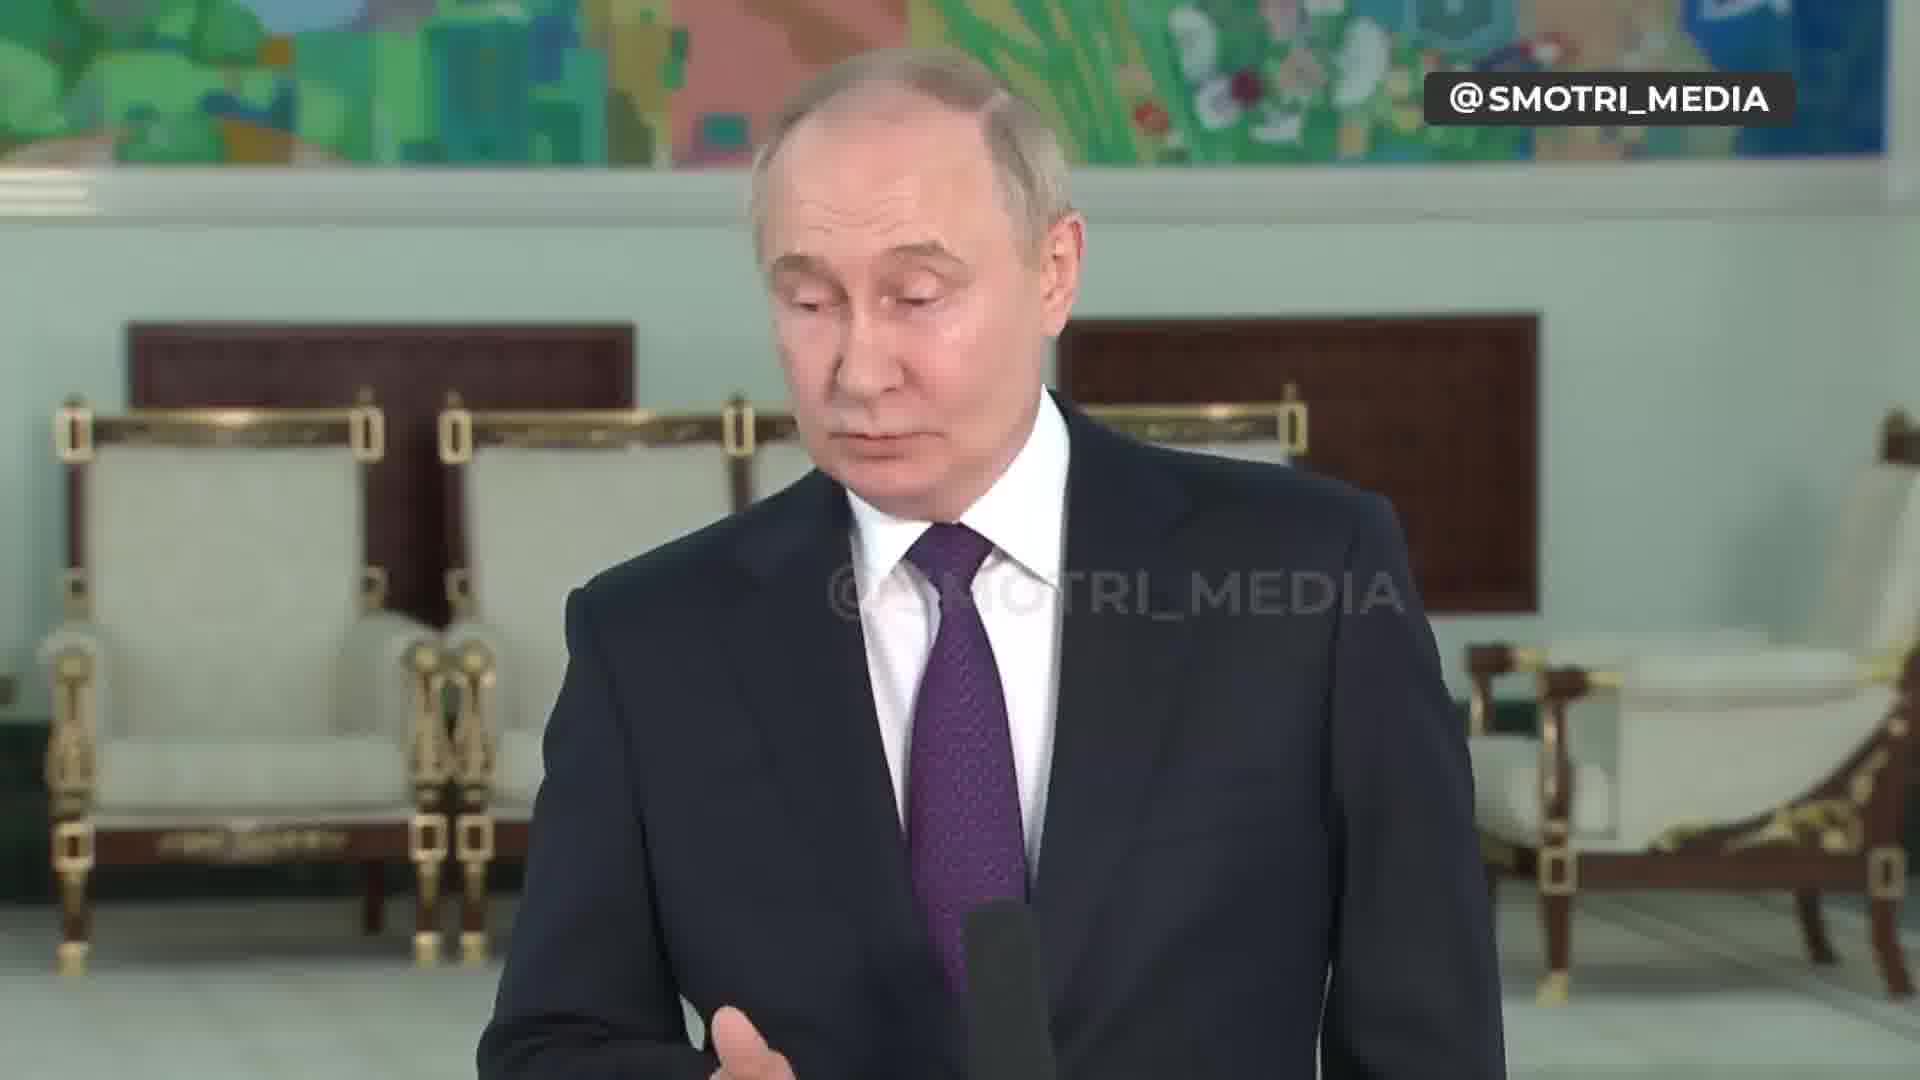 Putin kaže da je Vrhovna rada Ukrajine legitimna i da predsjednik Vrhovne rade treba biti vršitelj dužnosti predsjednika